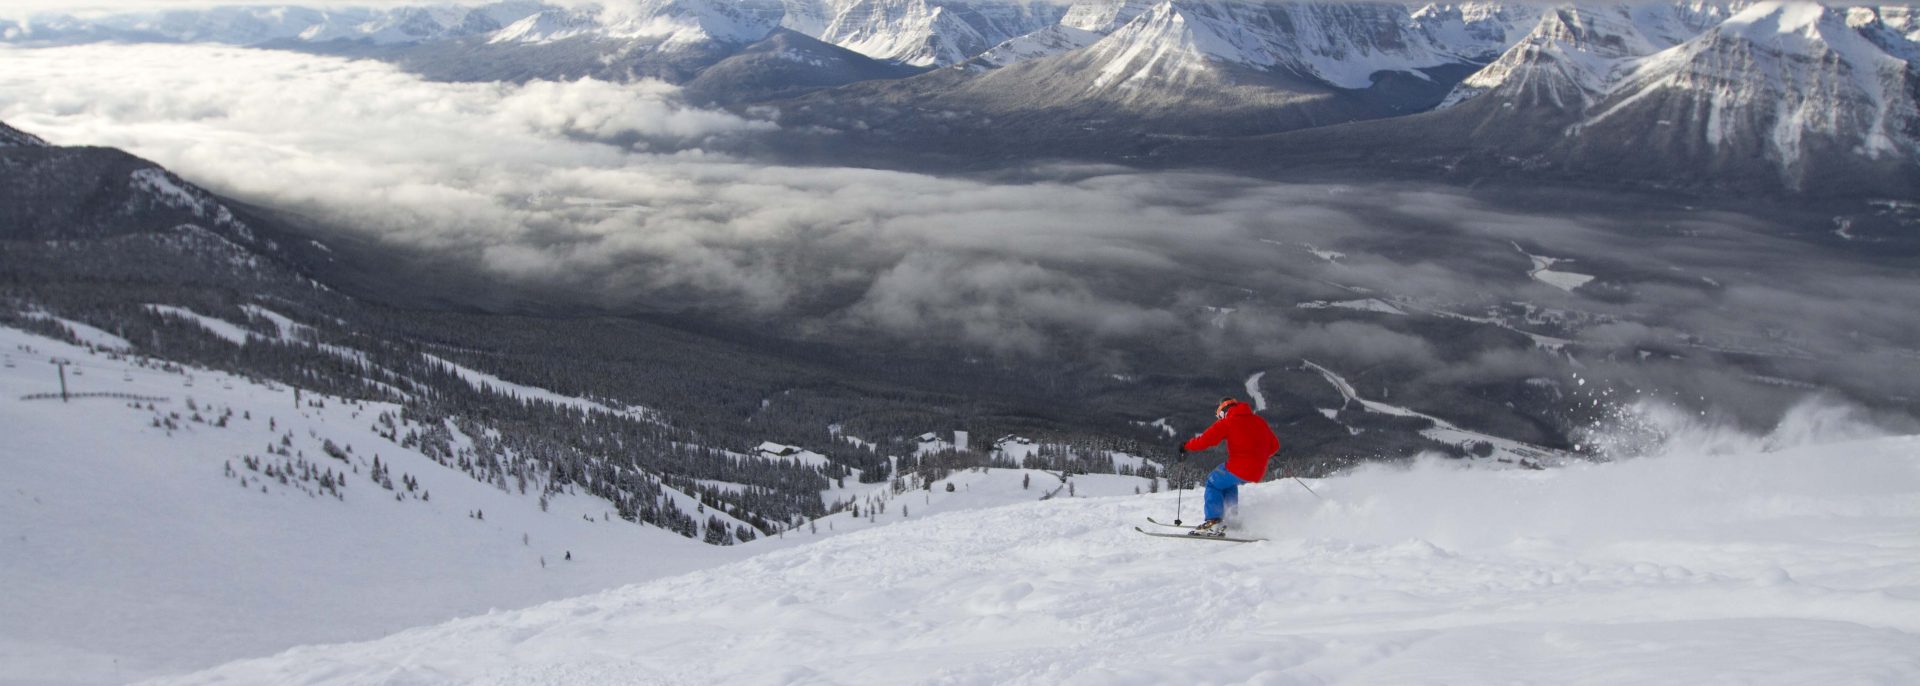 Un esquiador en Canadá. Foto: Lake Louise Ski Resort